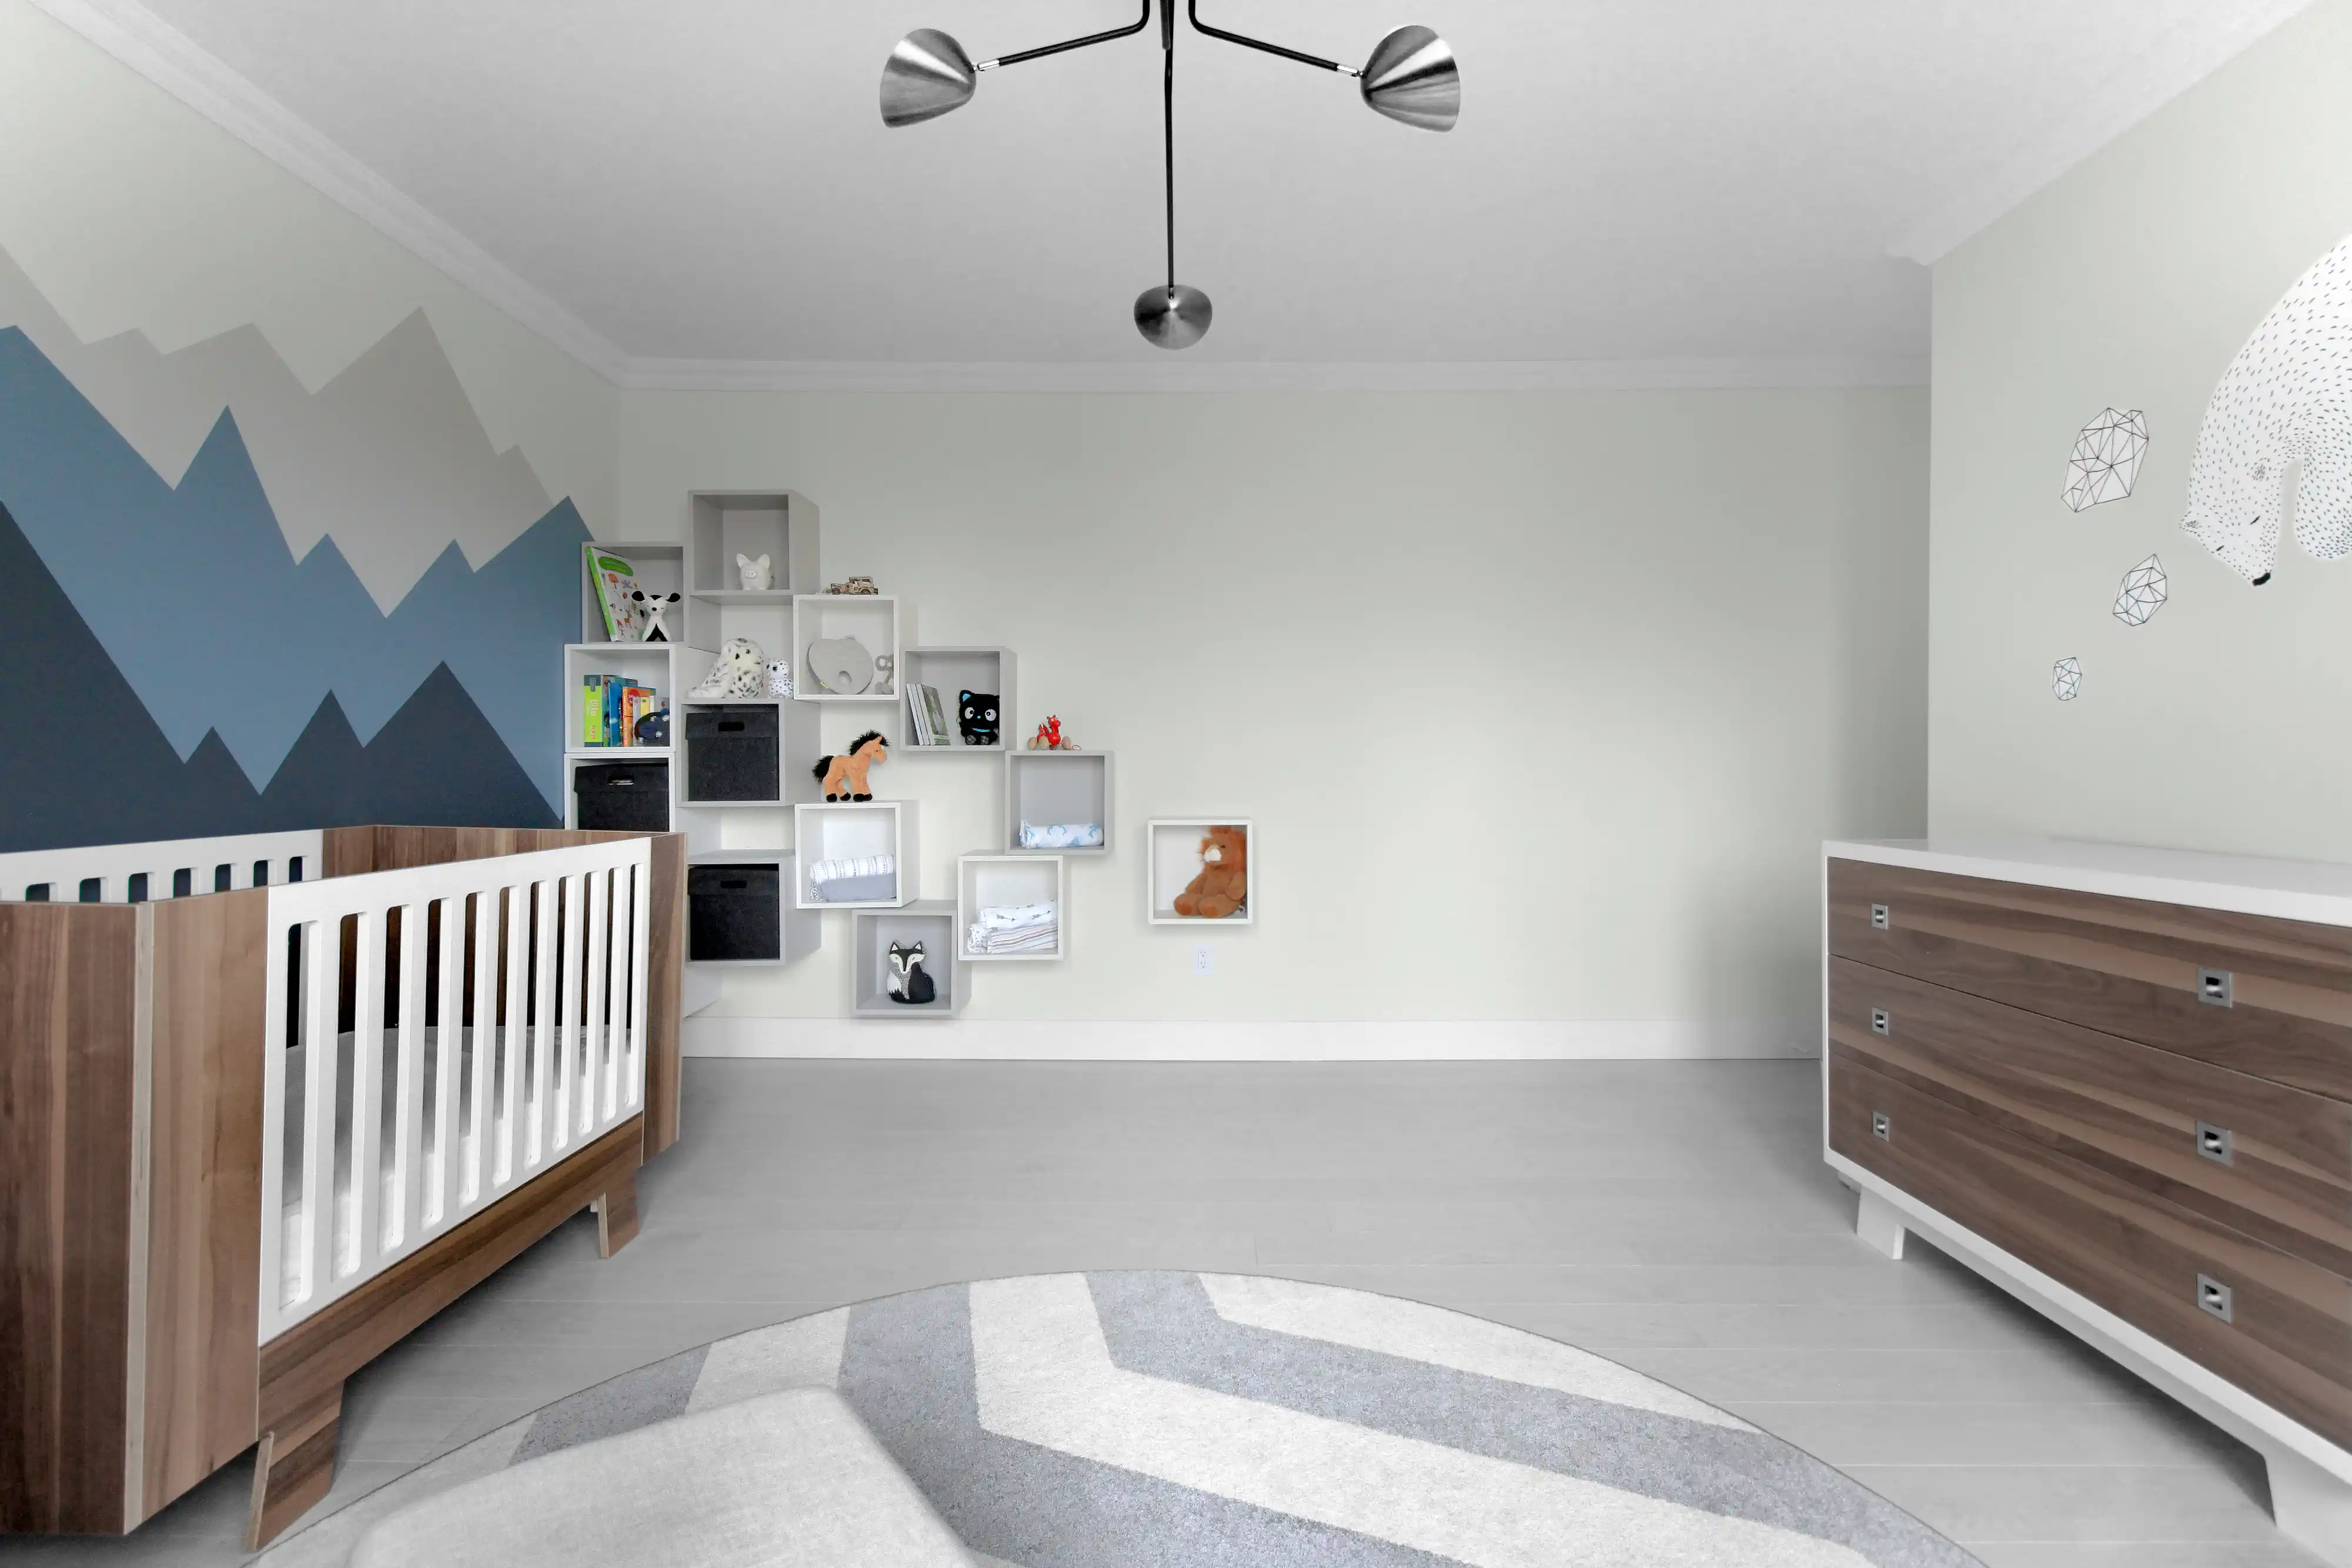 Chambre de bébé moderne avec une murale de montagne bleue et grise, un berceau blanc et une commode en bois, intérieur signé Sarah Brown Design